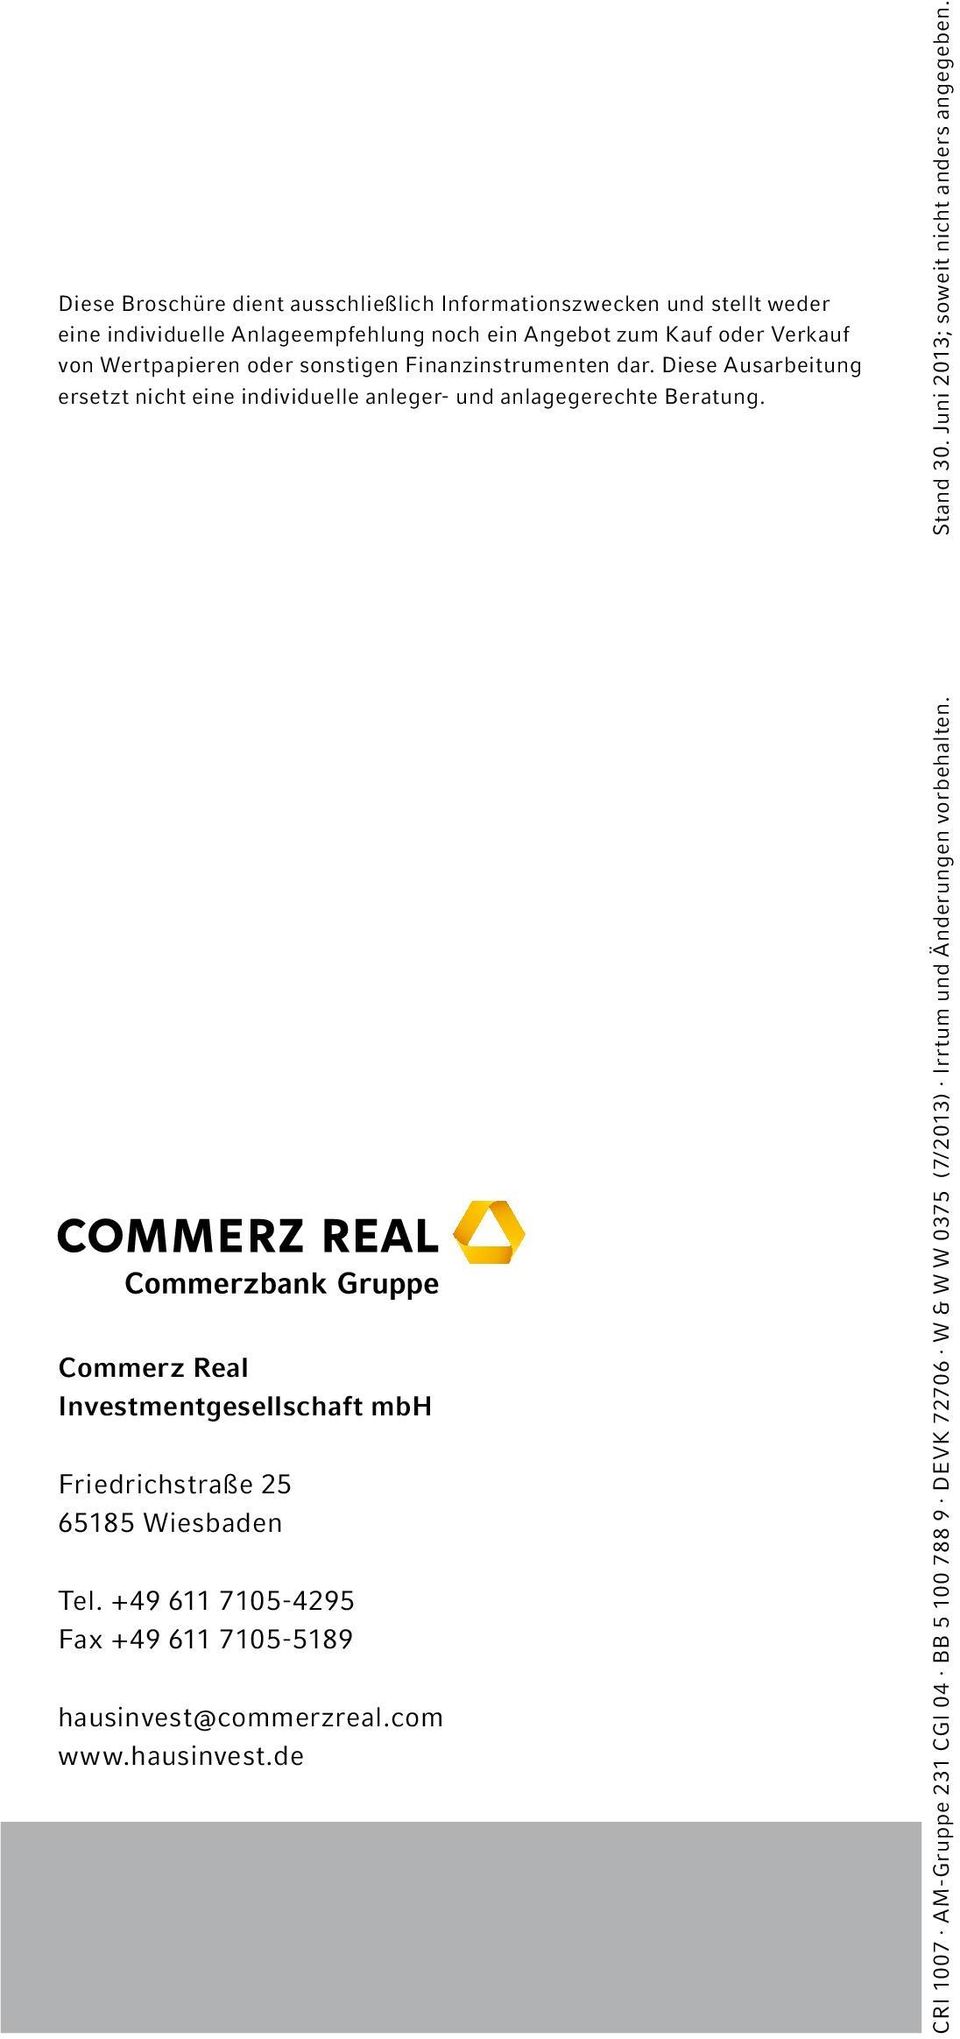 Commerz Real Investmentgesellschaft mbh Friedrichstraße 25 6585 Wiesbaden Tel. +49 6 705-4295 Fax +49 6 705-589 hausinvest@commerzreal.com www.